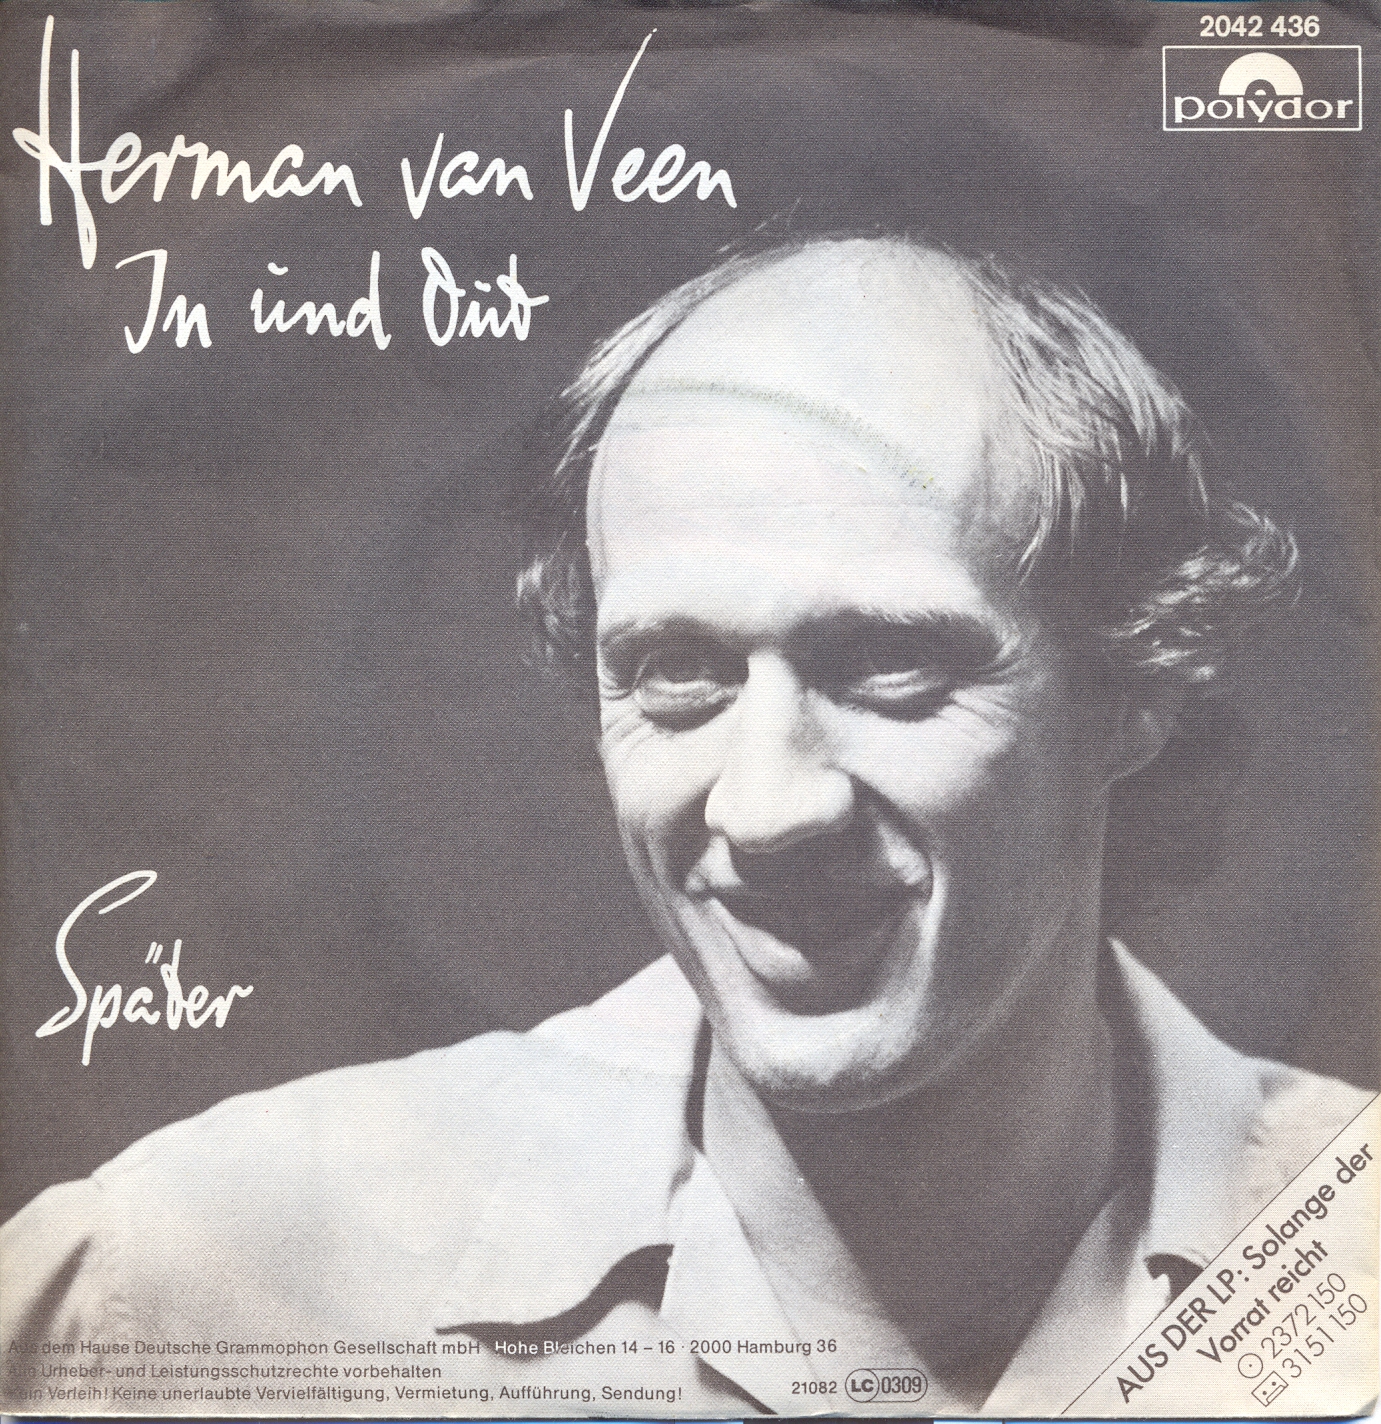 Van Veen Herman - In und out